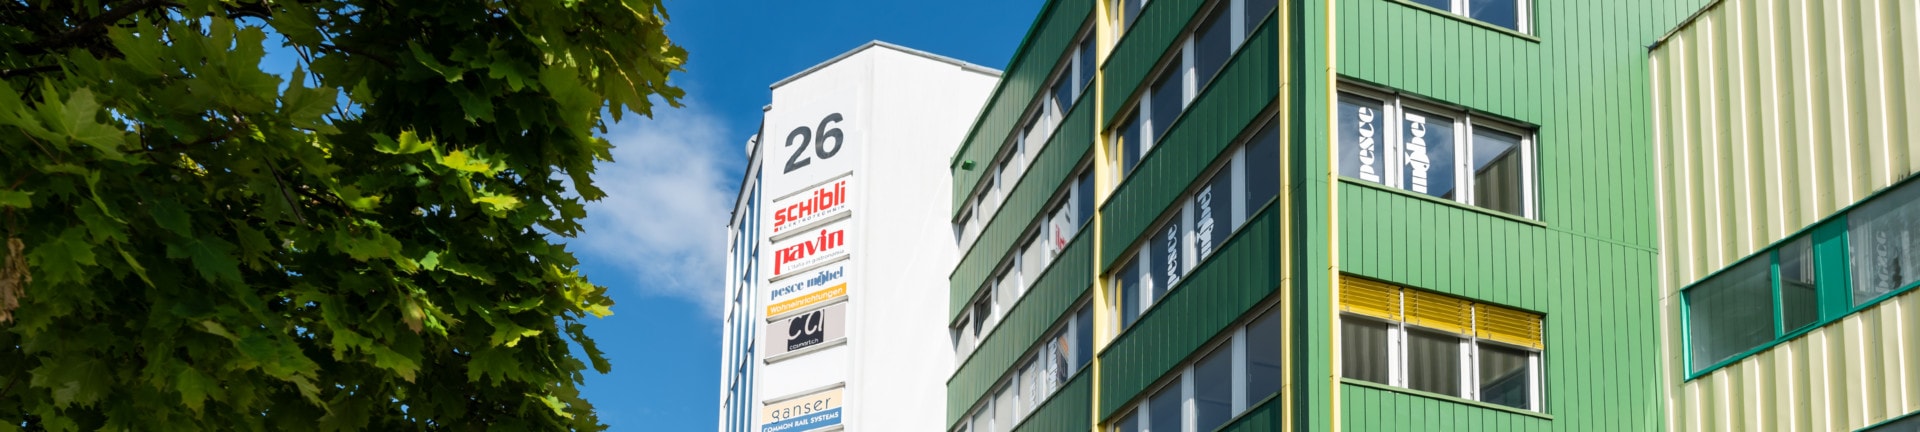 Schibli AG. Ihr Kontakt in Winterthur, wenn es um Elektrotechnik geht. Featured Image